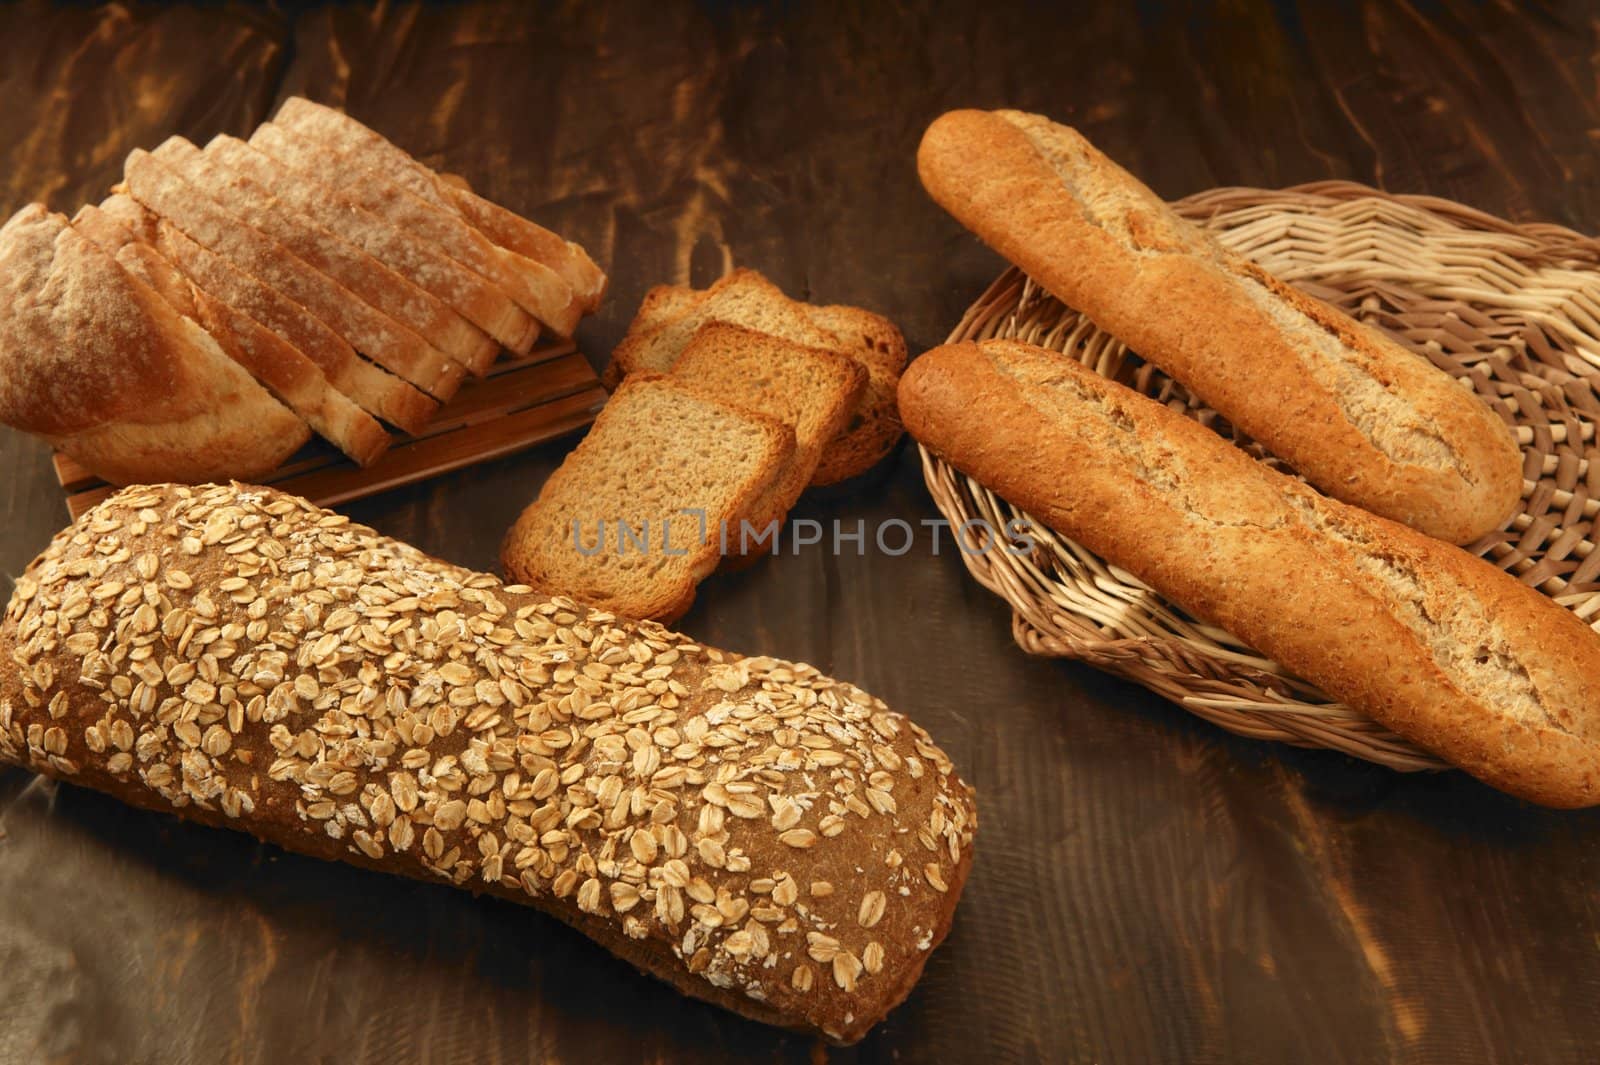 Varied bread still life over dark wood background